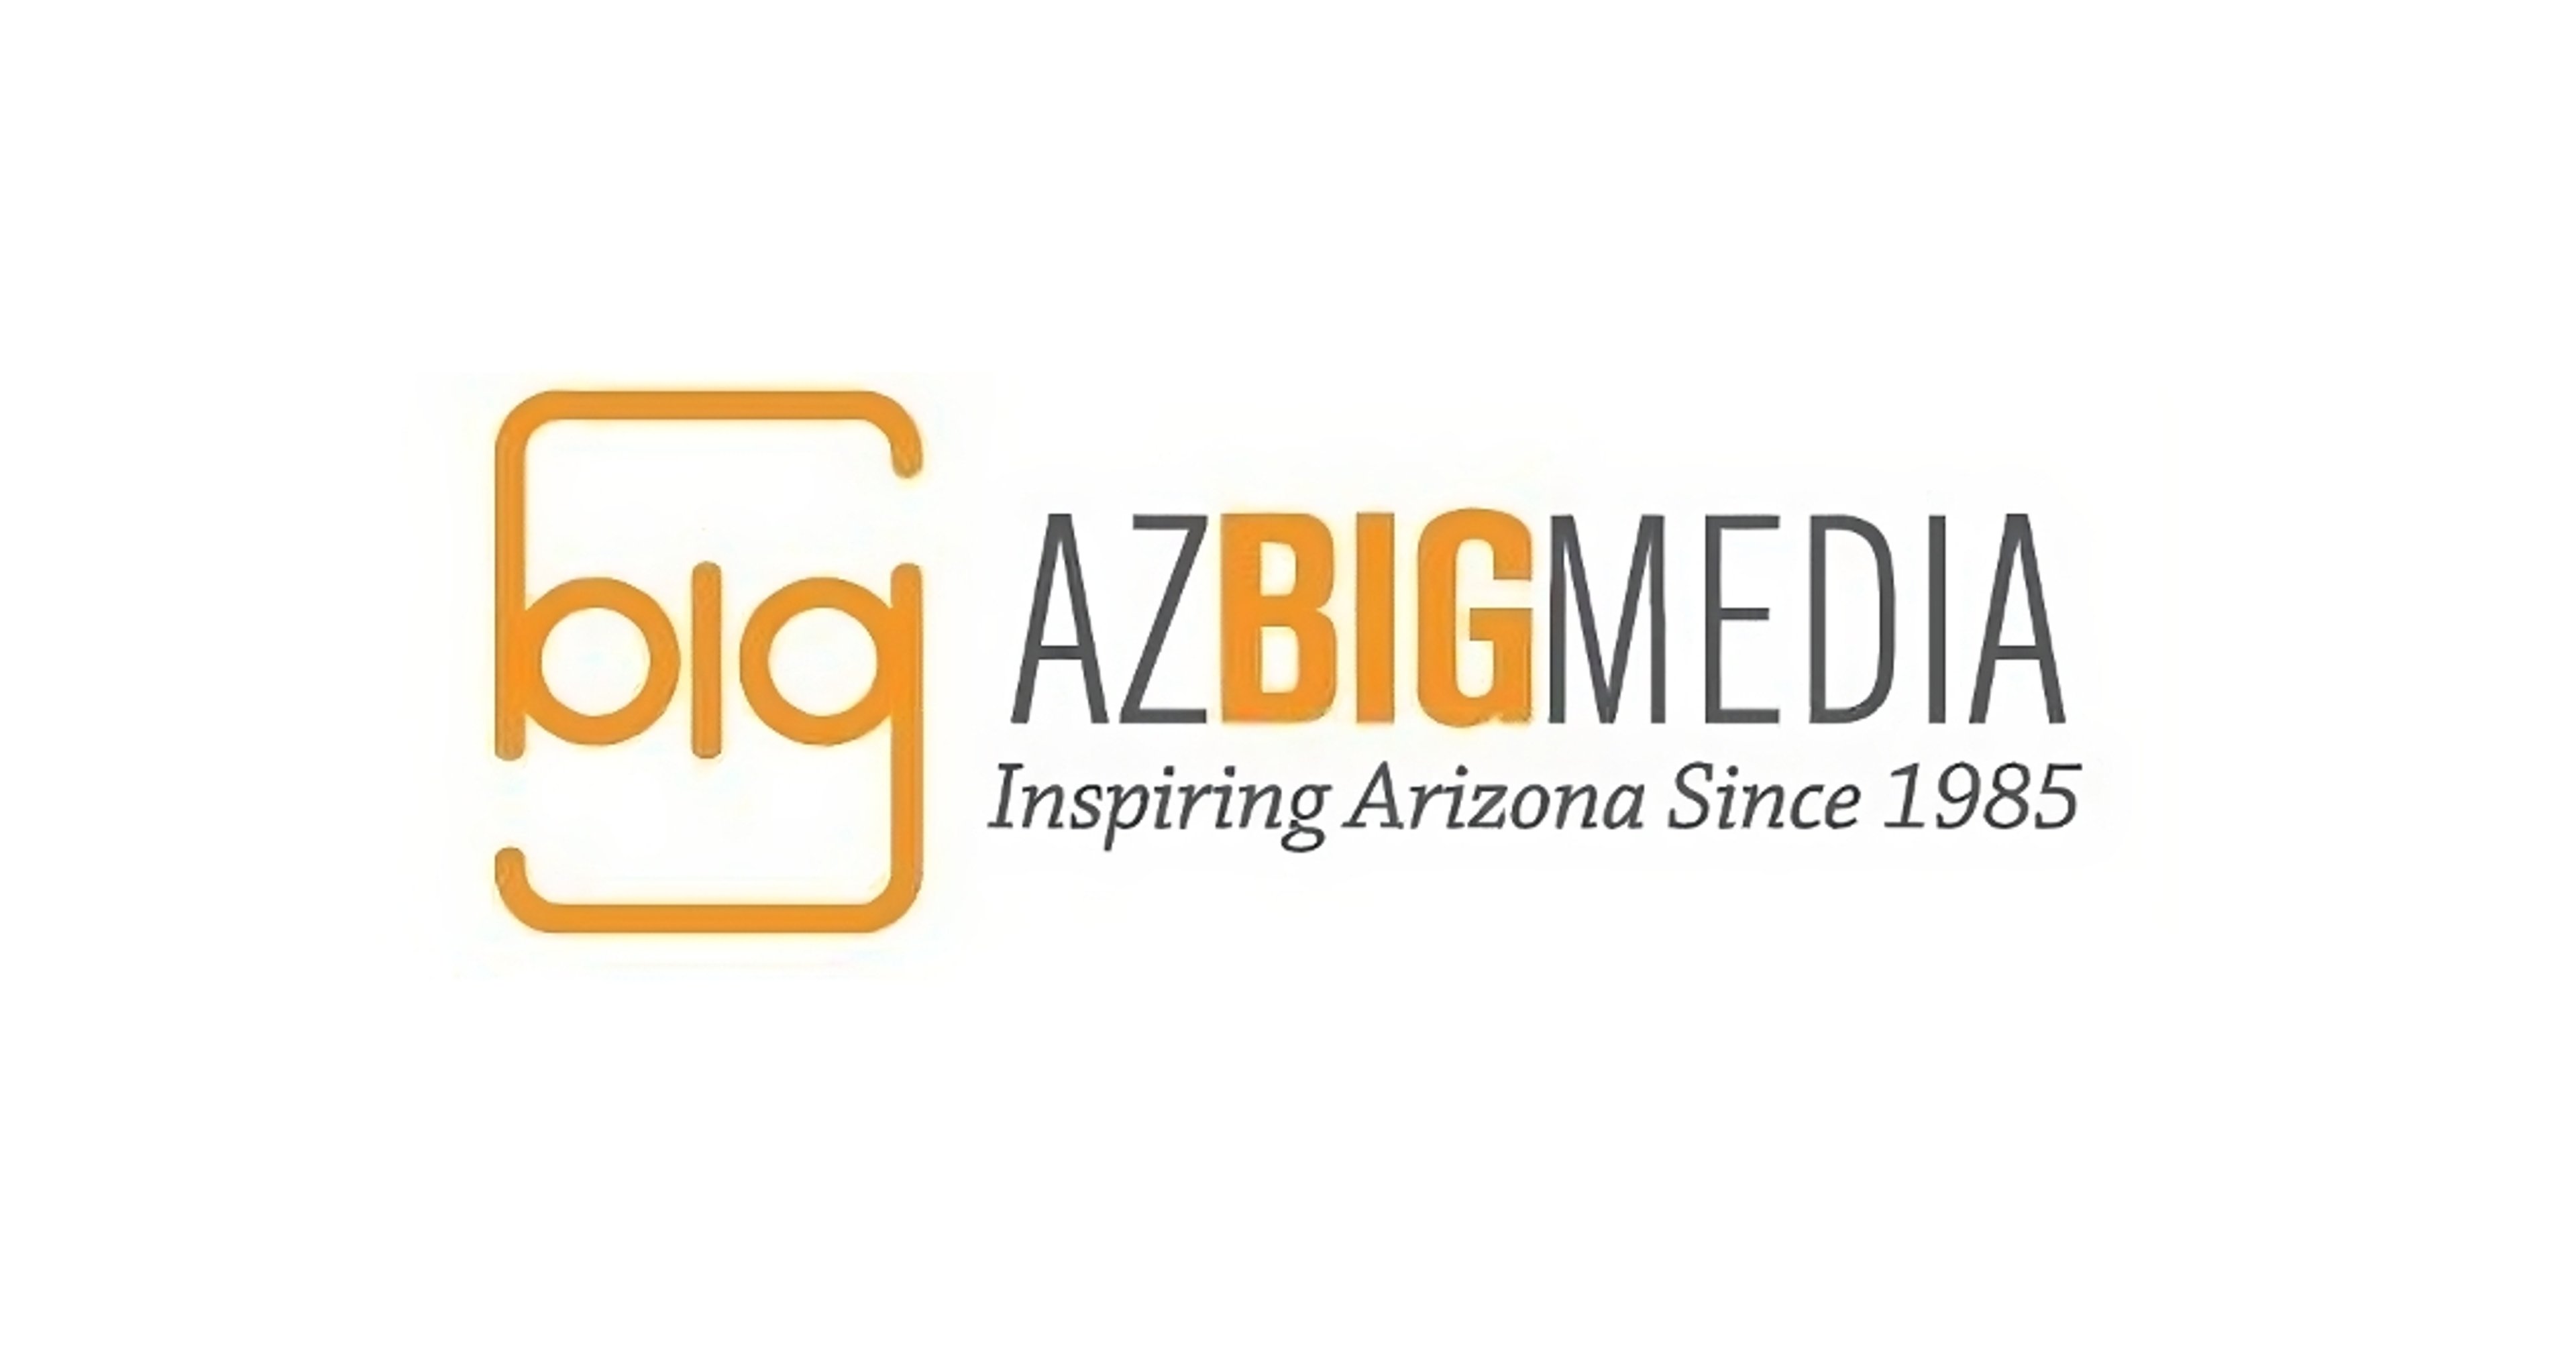 AZ Big Media logo with slogan "Inspiring Arizona Since 1985"